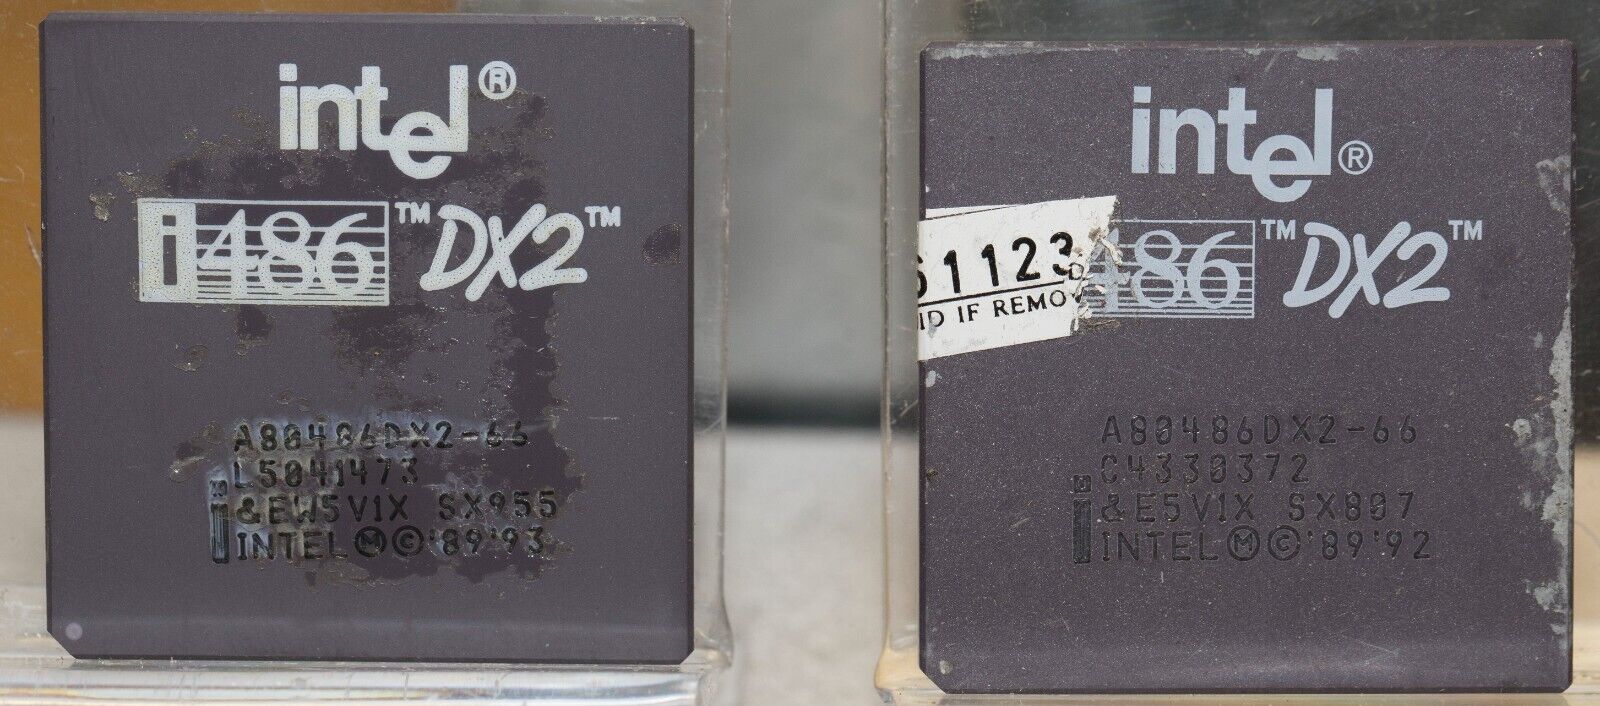 Vintage Intel 486DX2-66 Processor A80486DX2-66  Socket 3 Gold